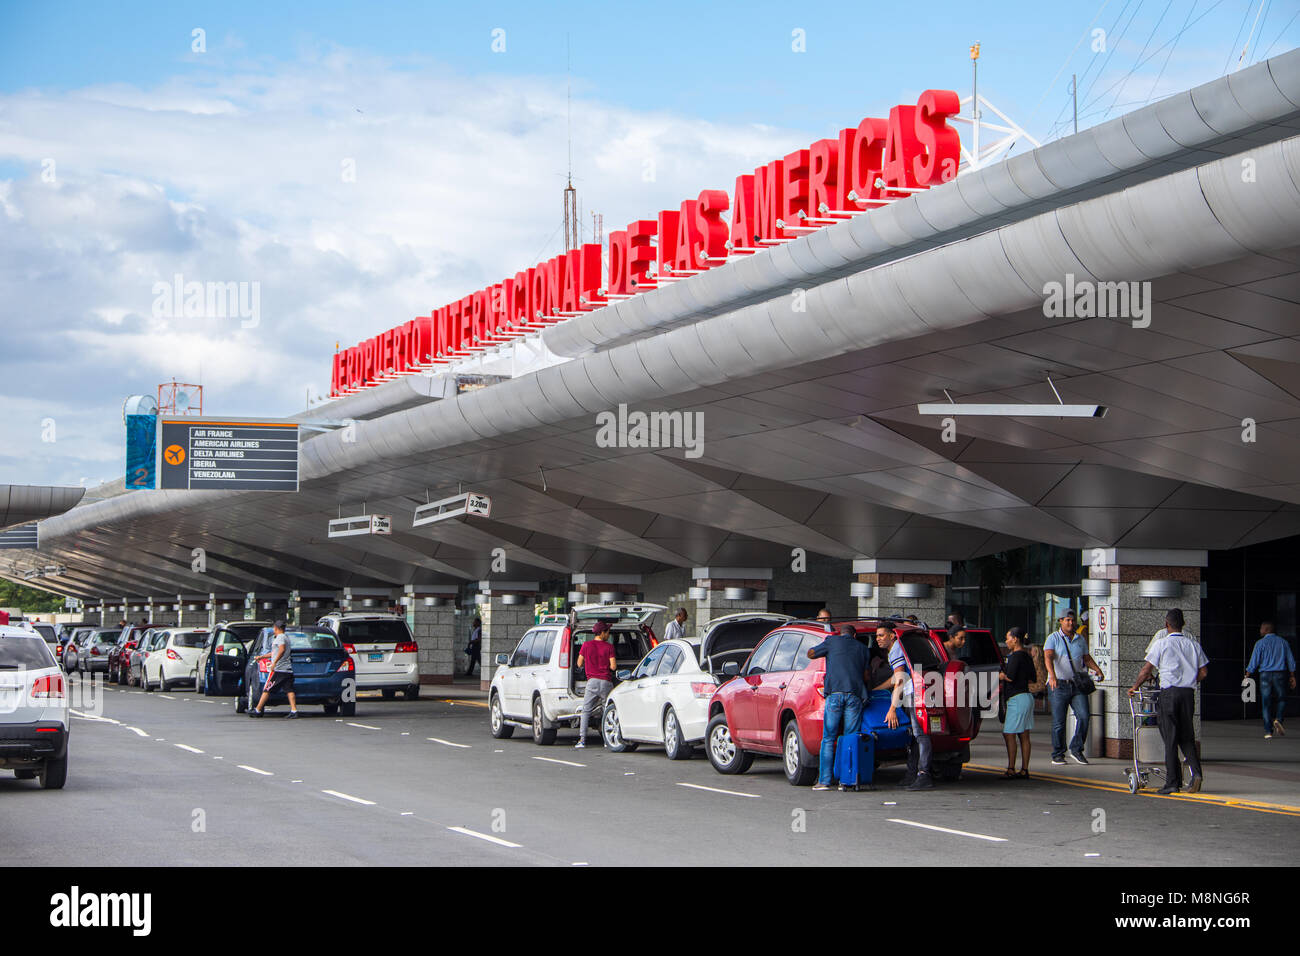 Aeropuerto las américas fotografías e imágenes de alta resolución - Alamy